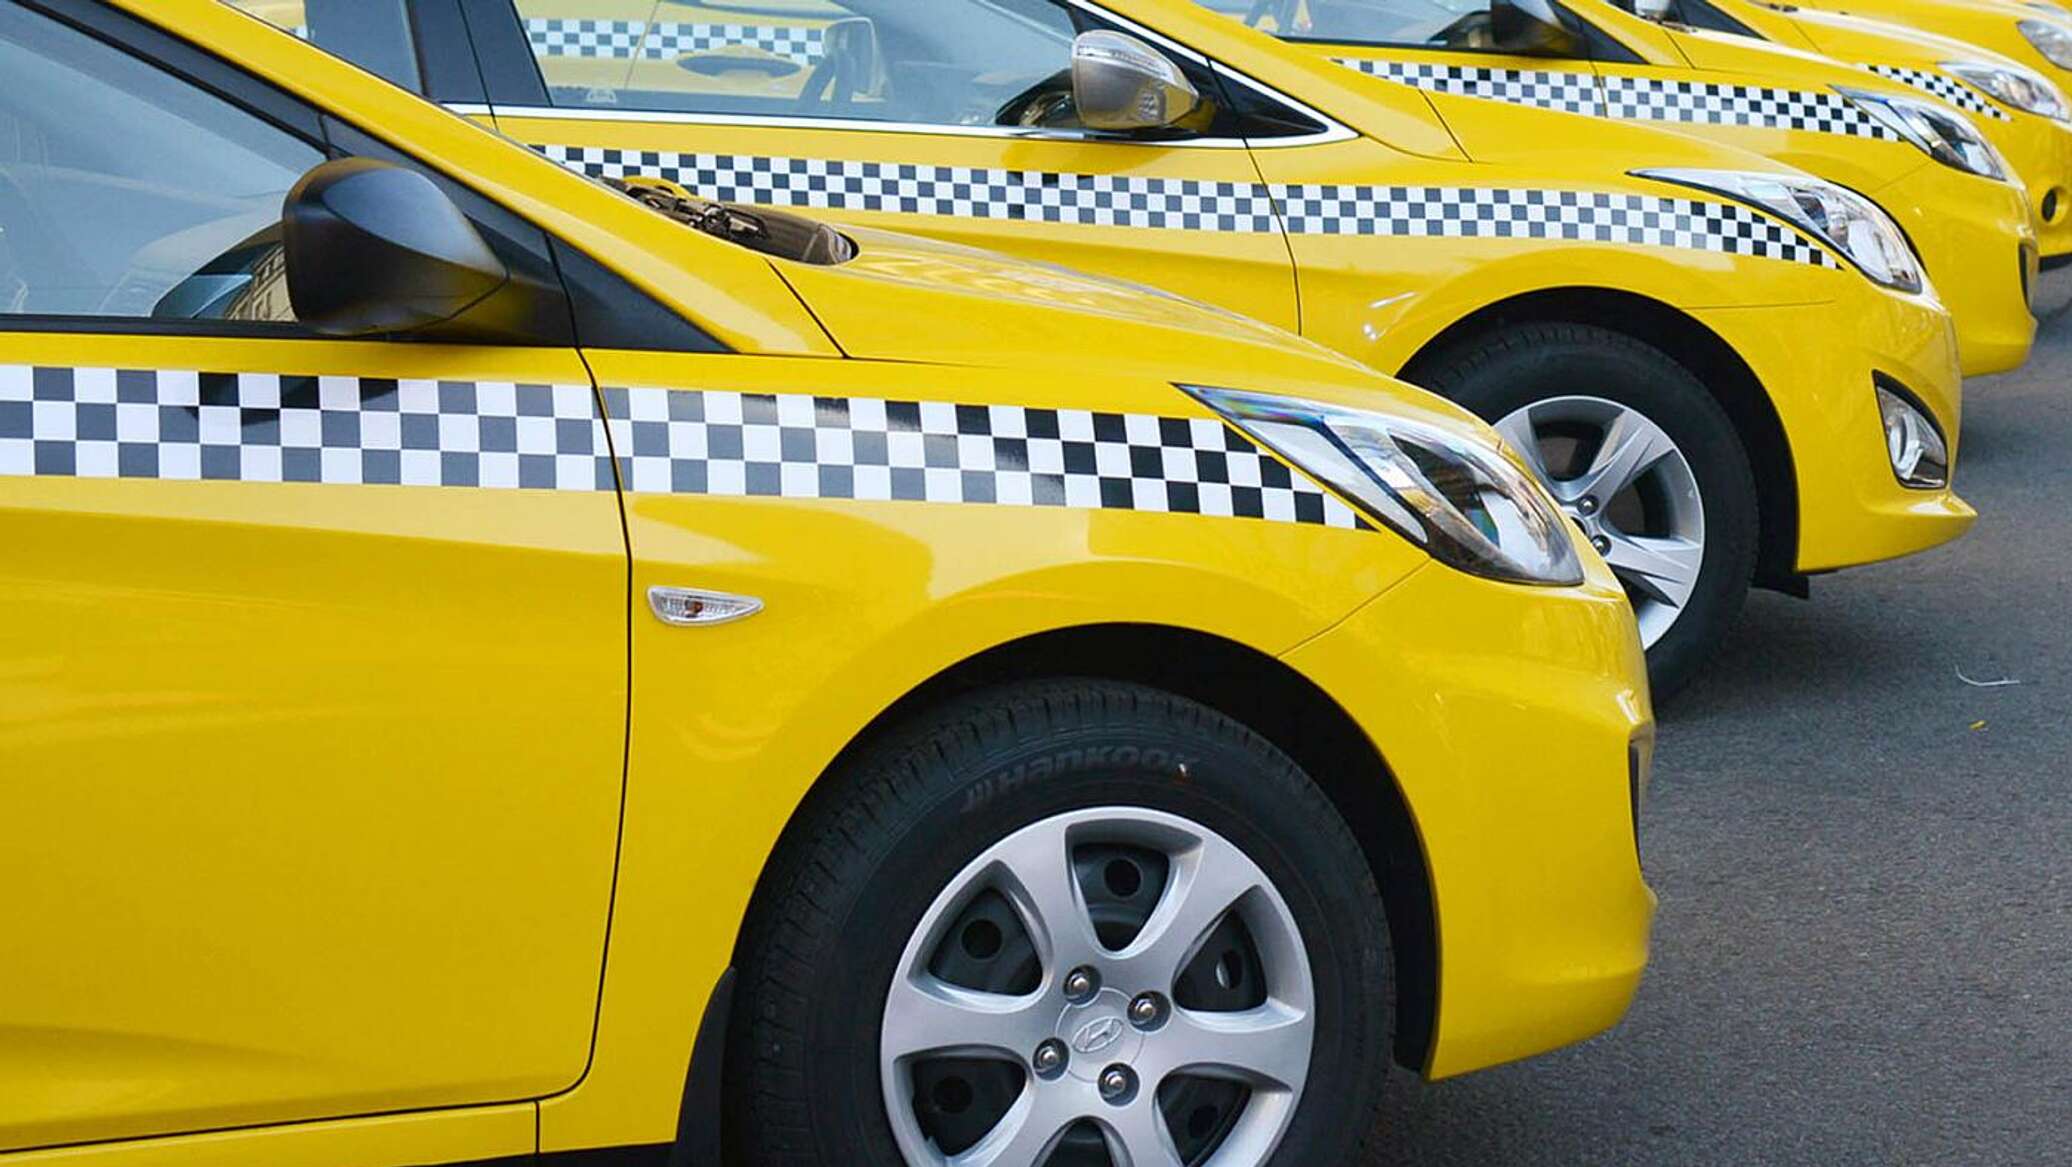 Агрегаторы такси и их водители будут работать по новым правилам с 2025 года